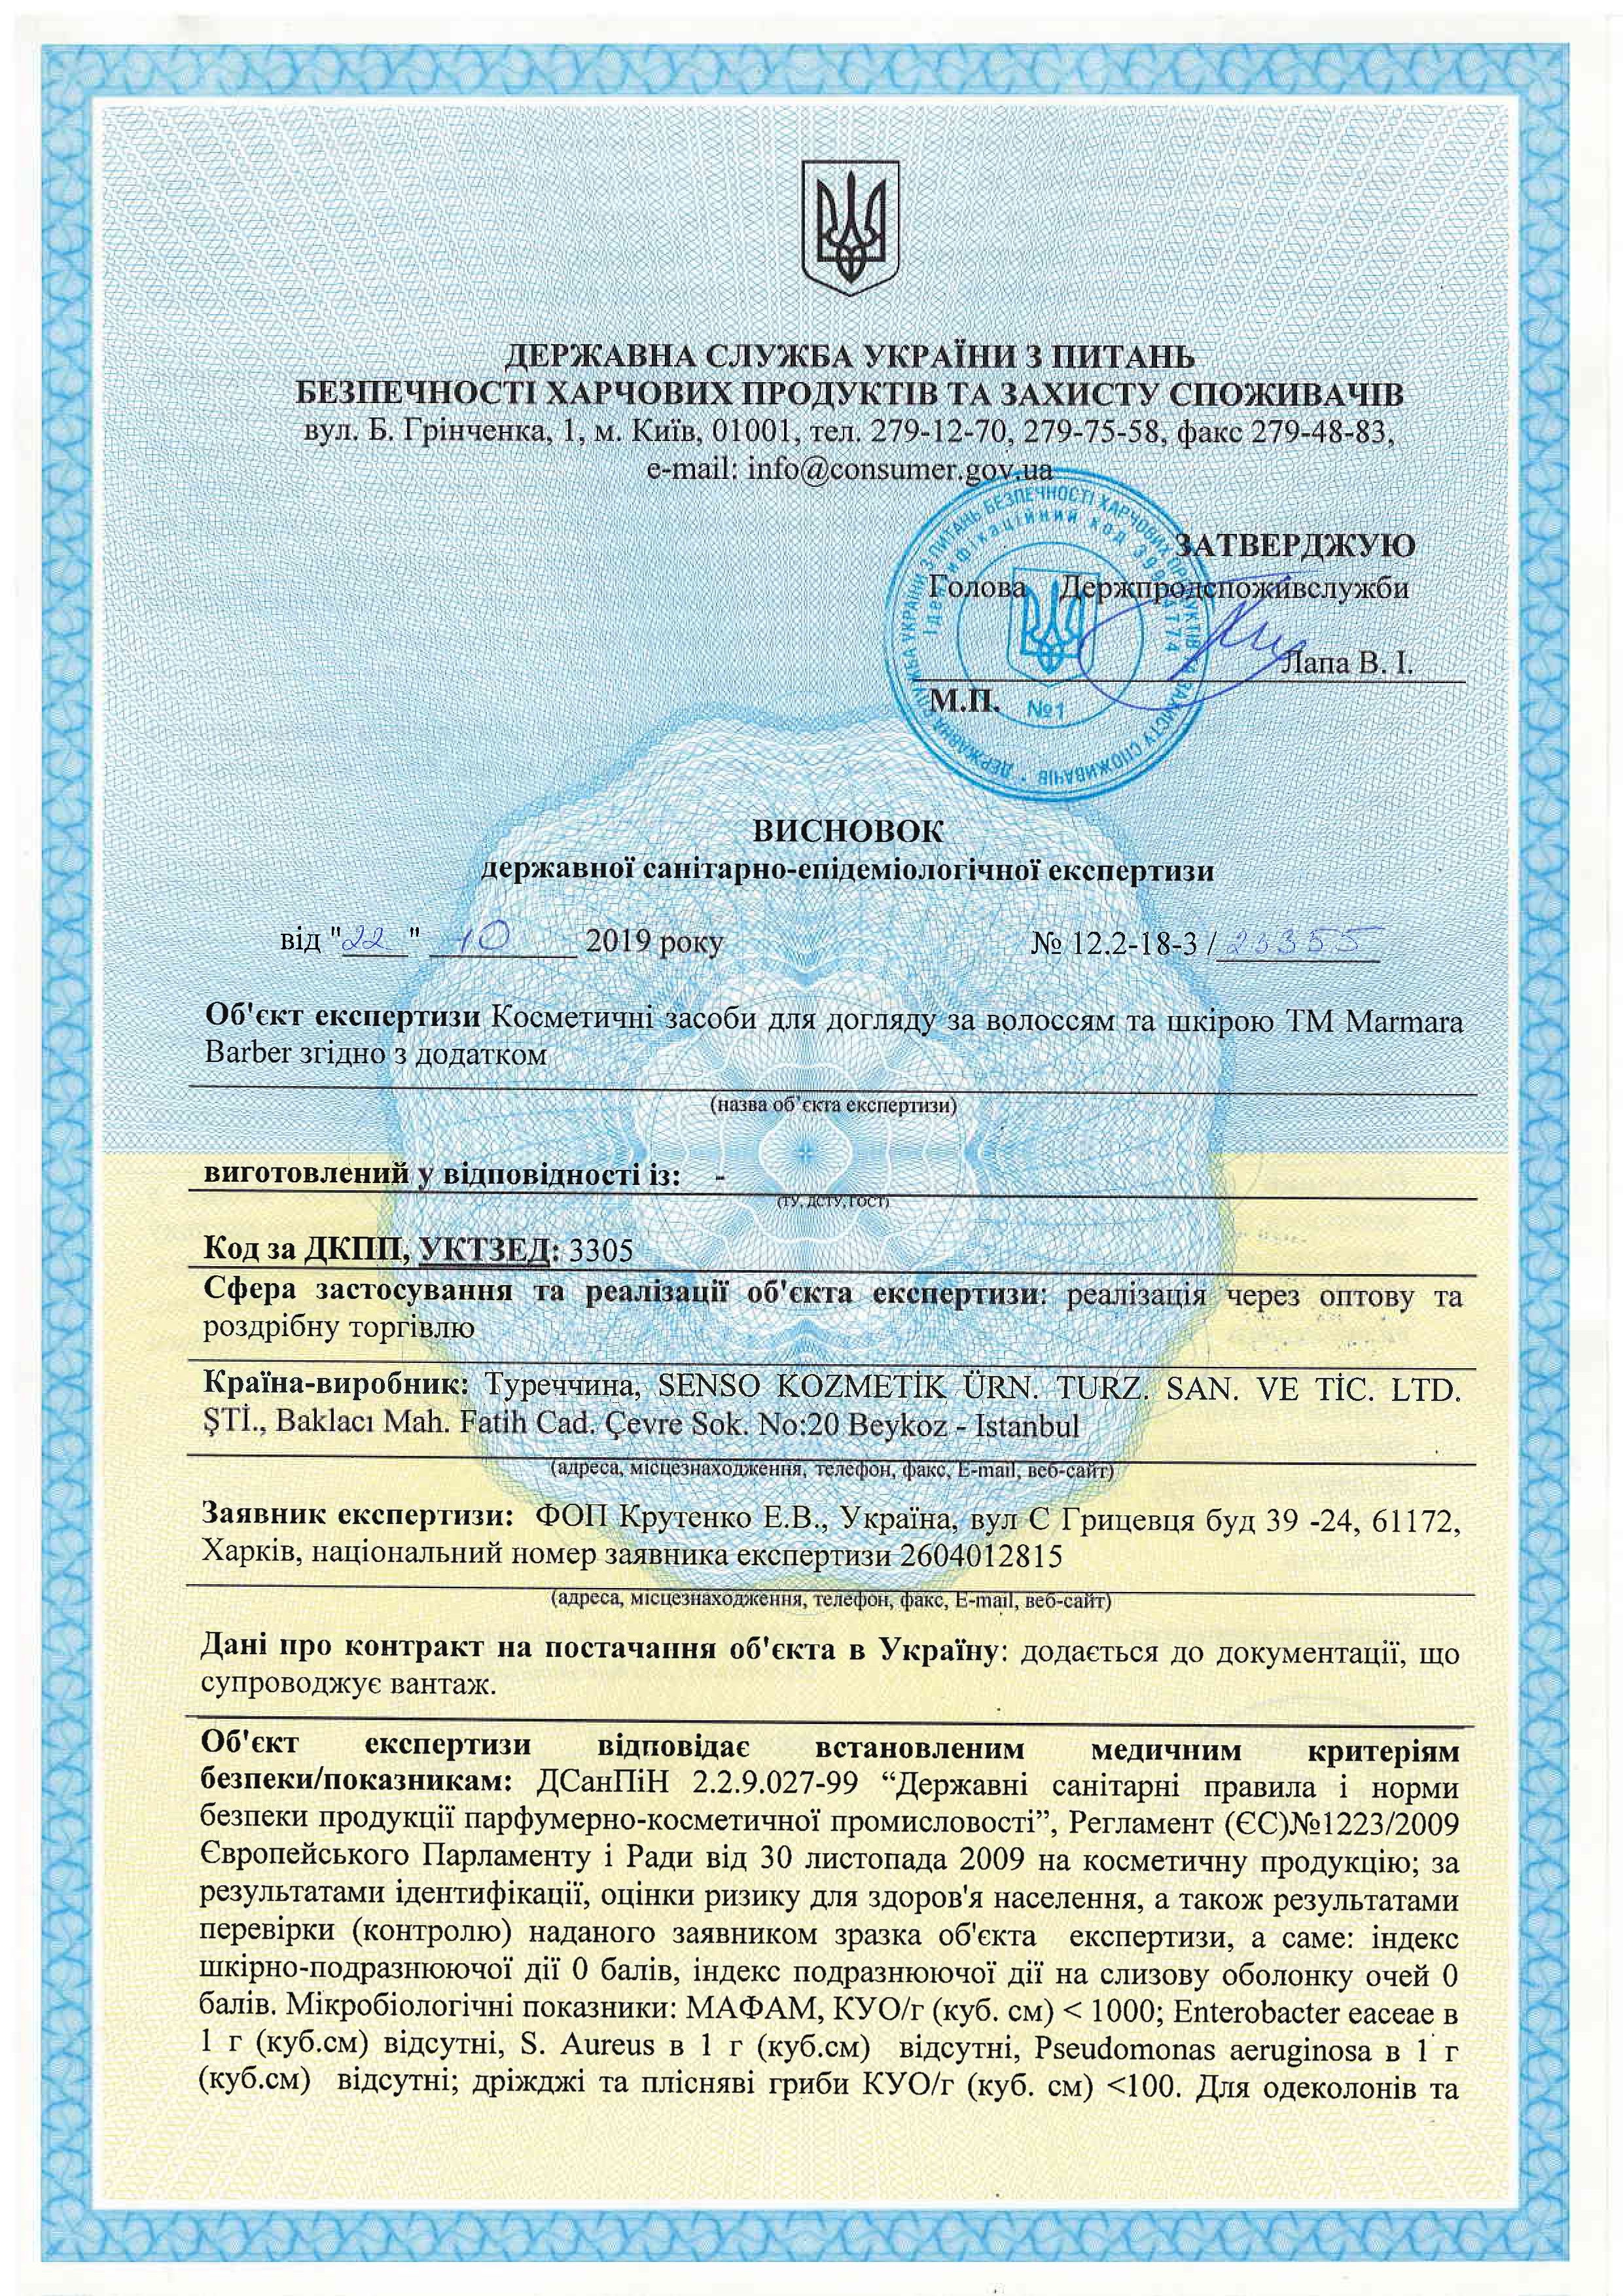 Сертифікат відповідності до державних санітарно-епідемічних стандартів косметичних засобів для догляду за волоссям та шкірою TM Marmara Barber